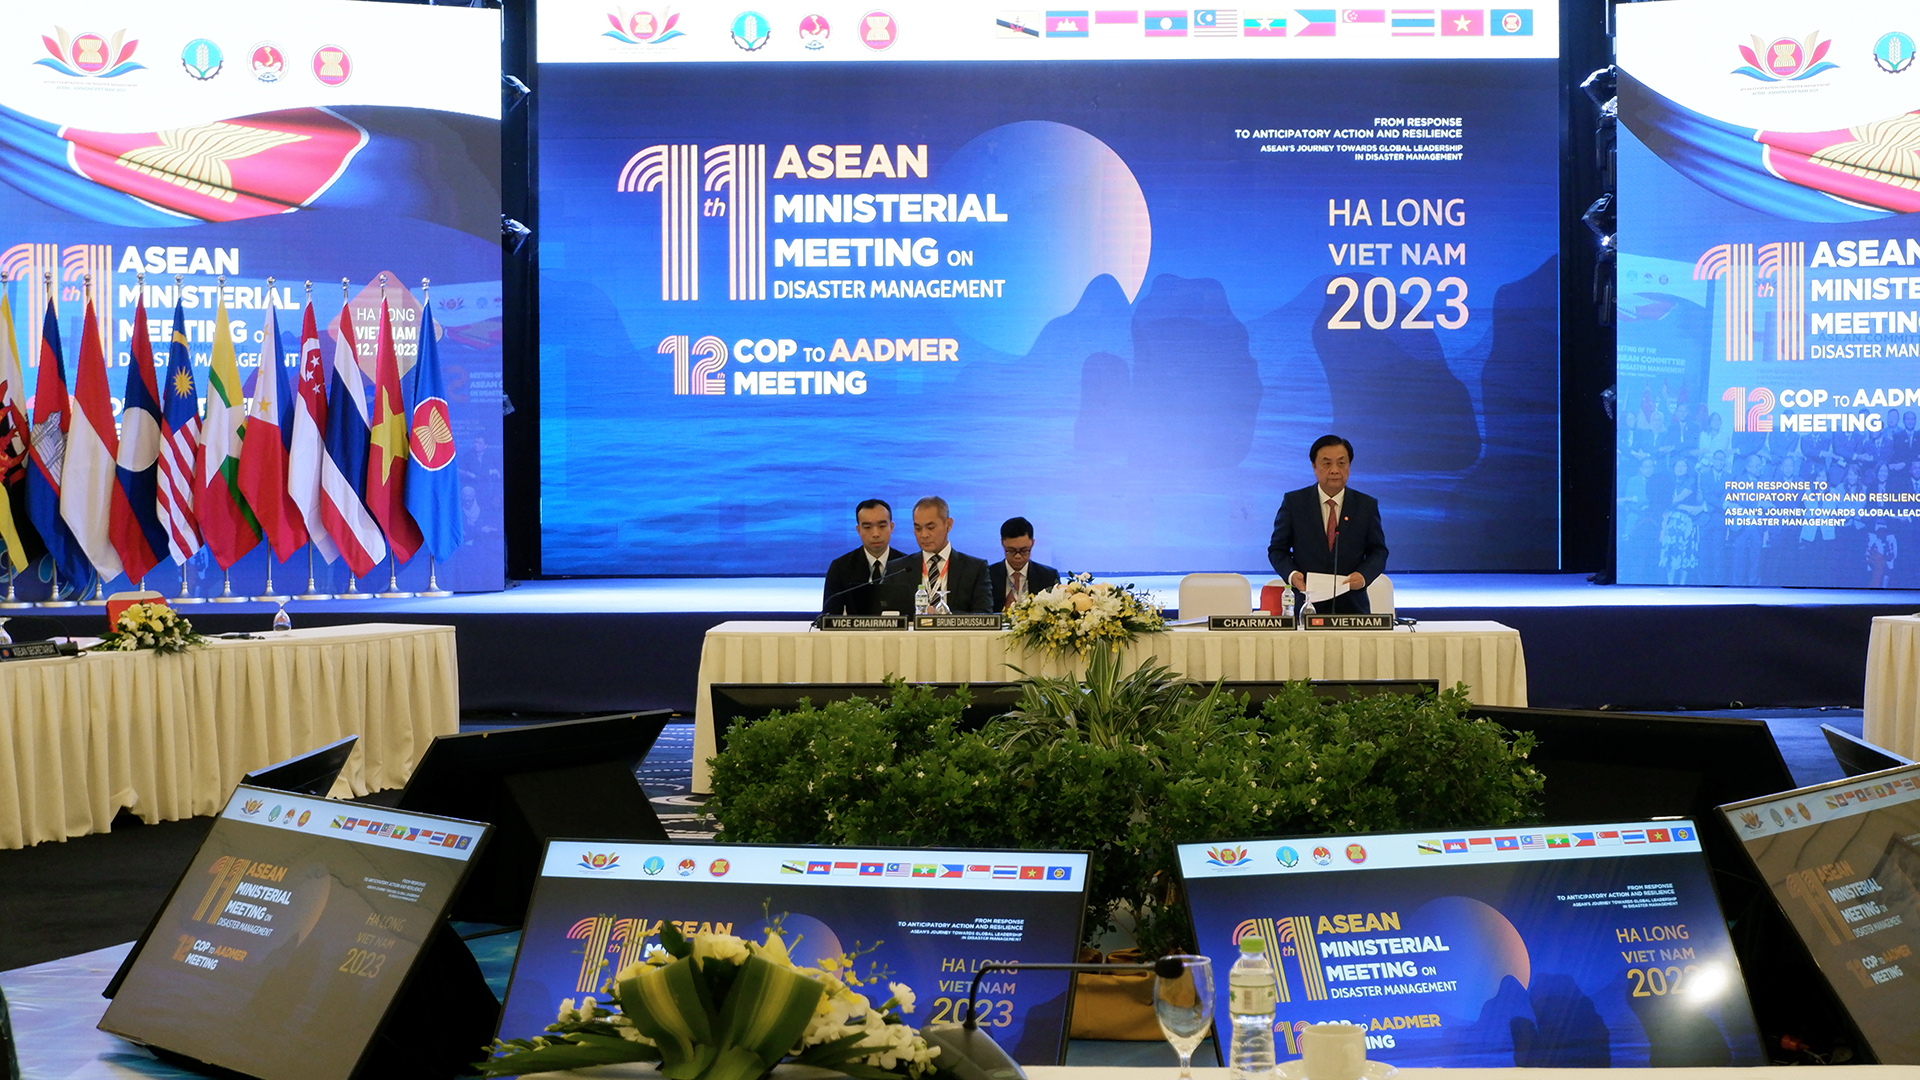 Bộ trưởng Lê Minh Hoan phát biểu khai mạc Hội nghị Bộ trưởng ASEAN về quản lý thiên tai (AMMDM) lần thứ 11. Ảnh: Bảo Thắng.